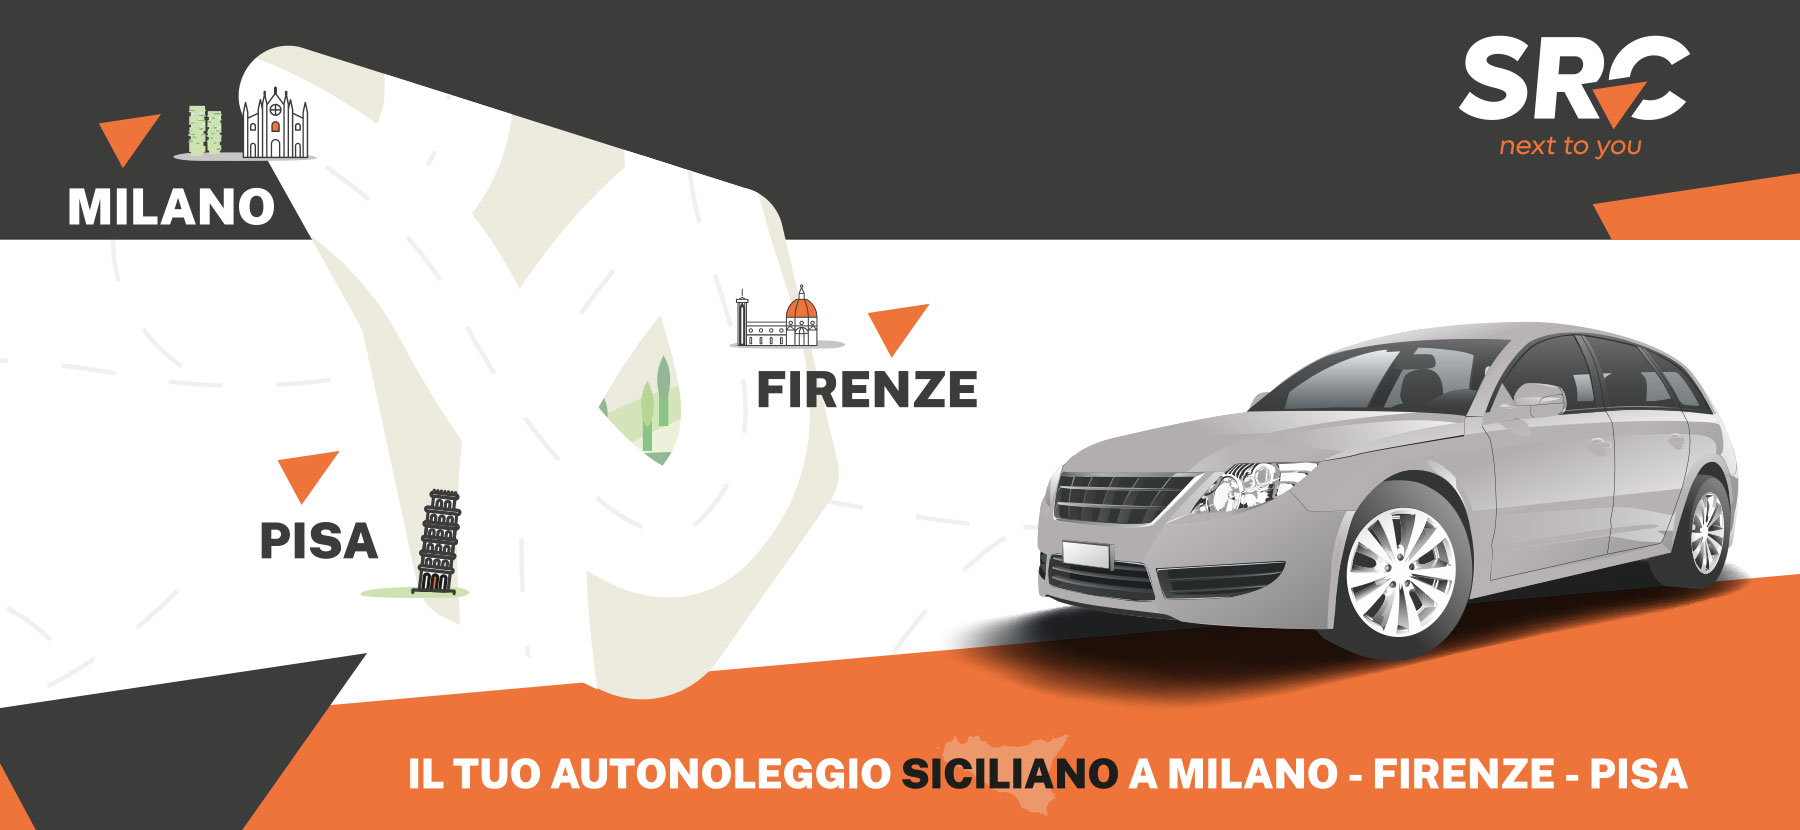 Il tuo autonoleggio siciliano anche a Milano, Firenze e Pisa